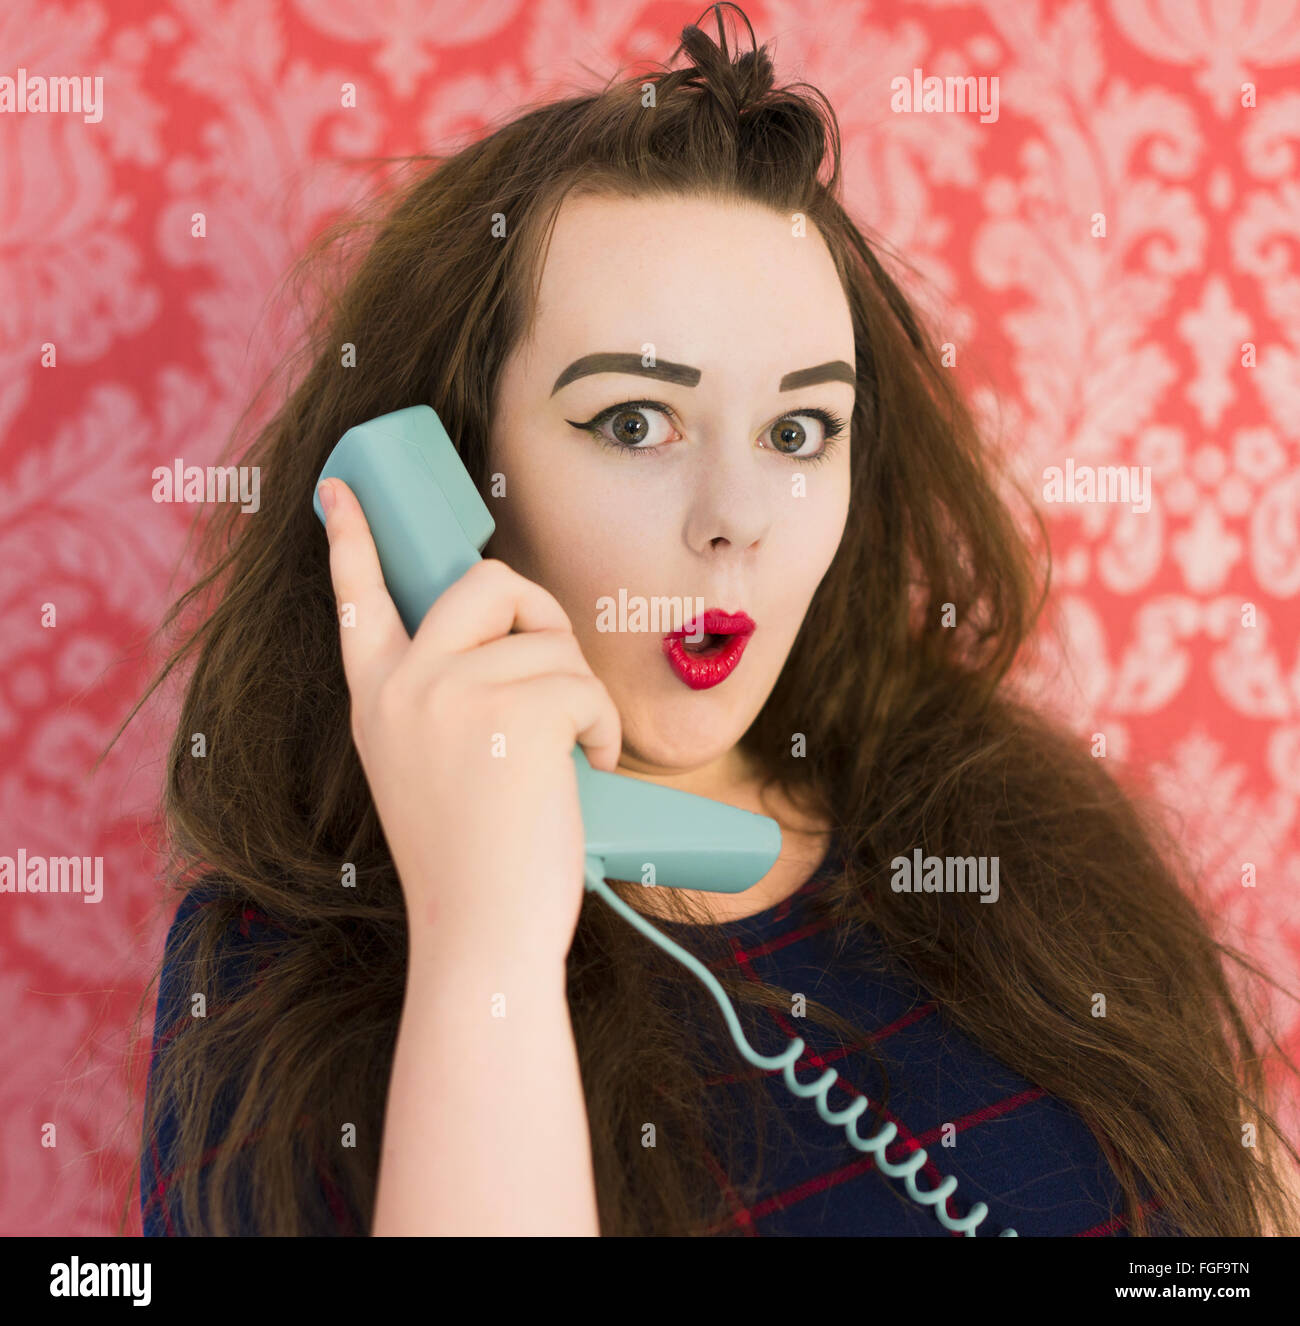 Teenage girl holding a retro téléphone bleu à la surprise contre un fond rouge vintage Banque D'Images